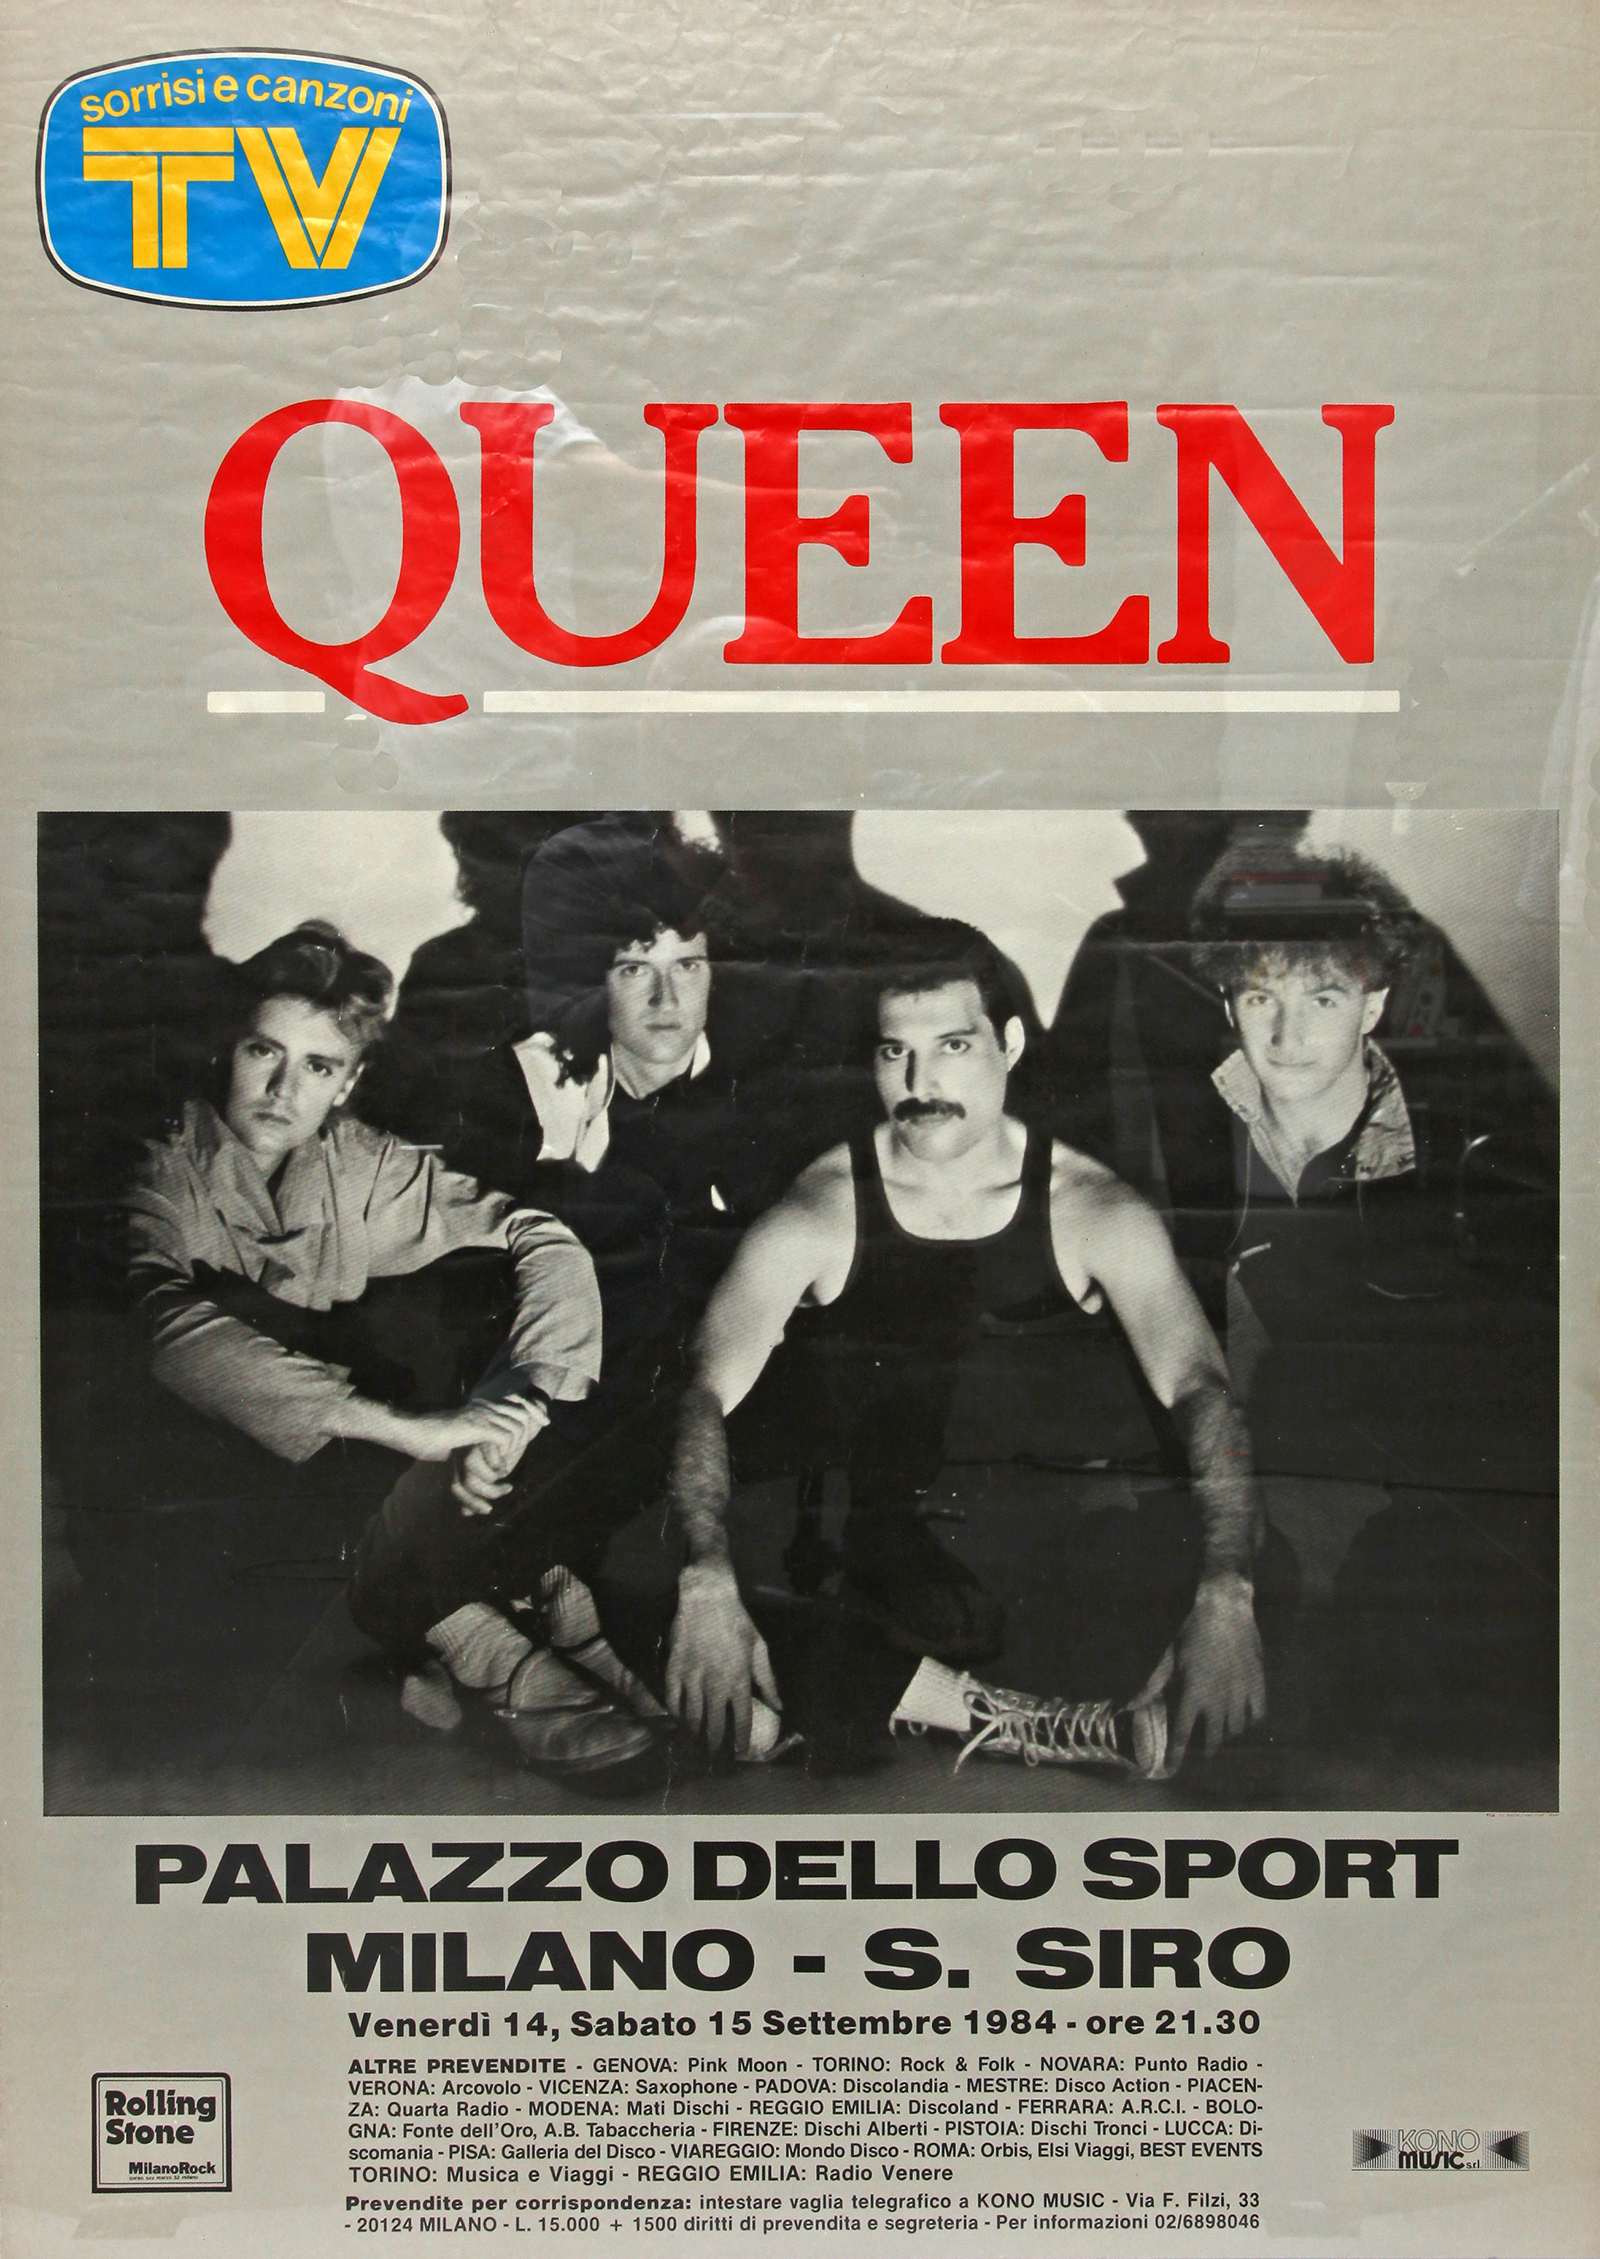 Queen in Milan on 14.-15.09.1984